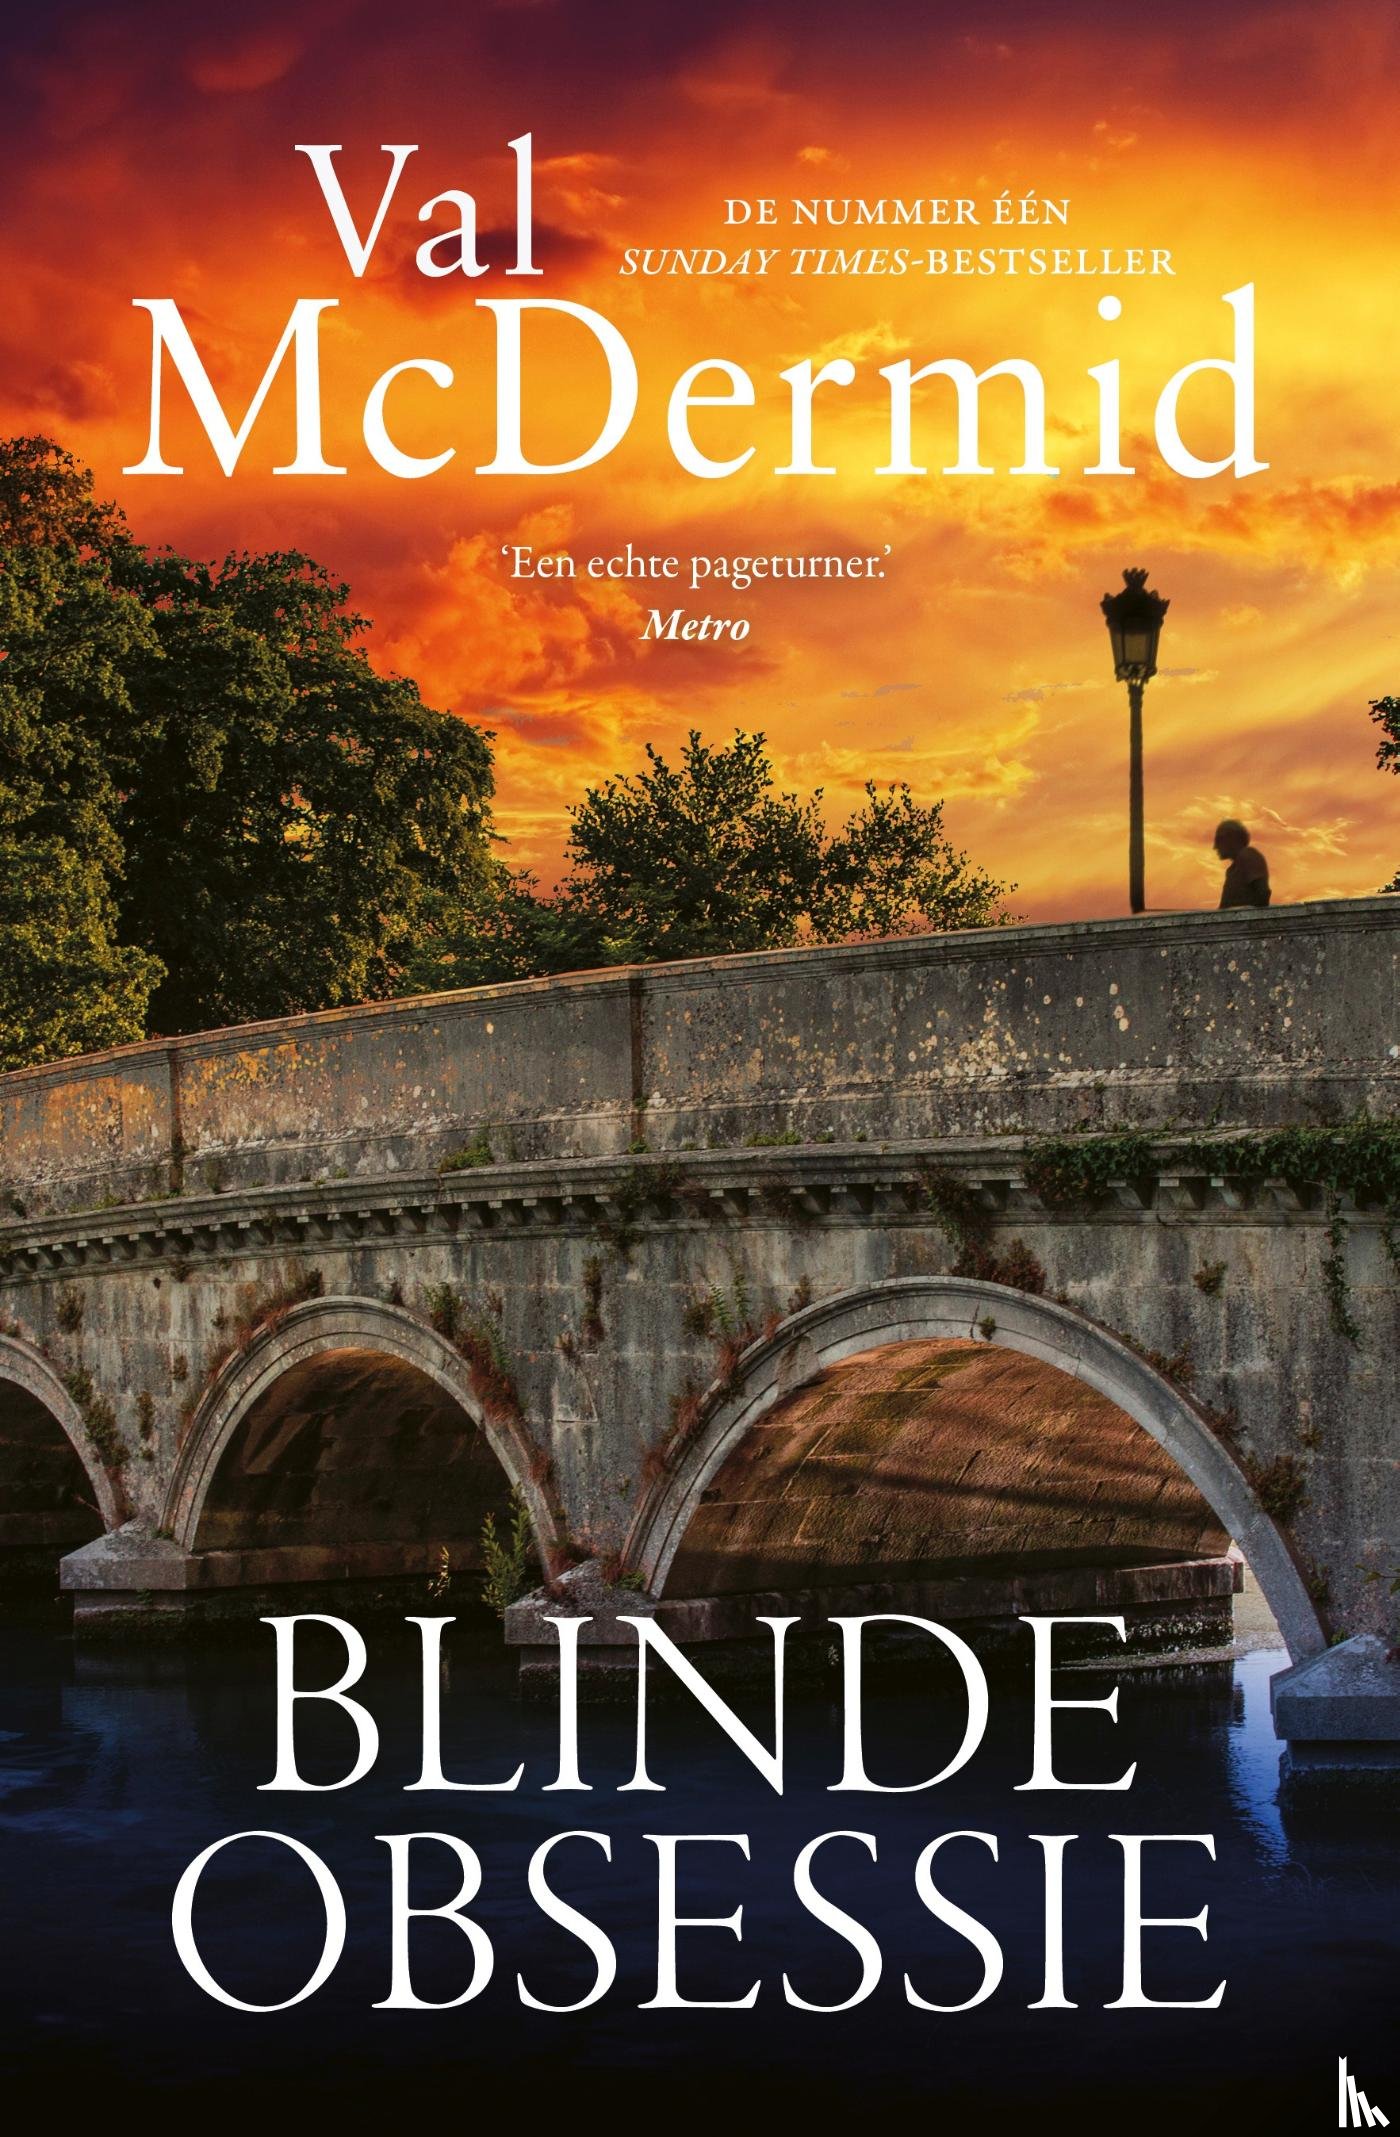 McDermid, Val - Blinde obsessie